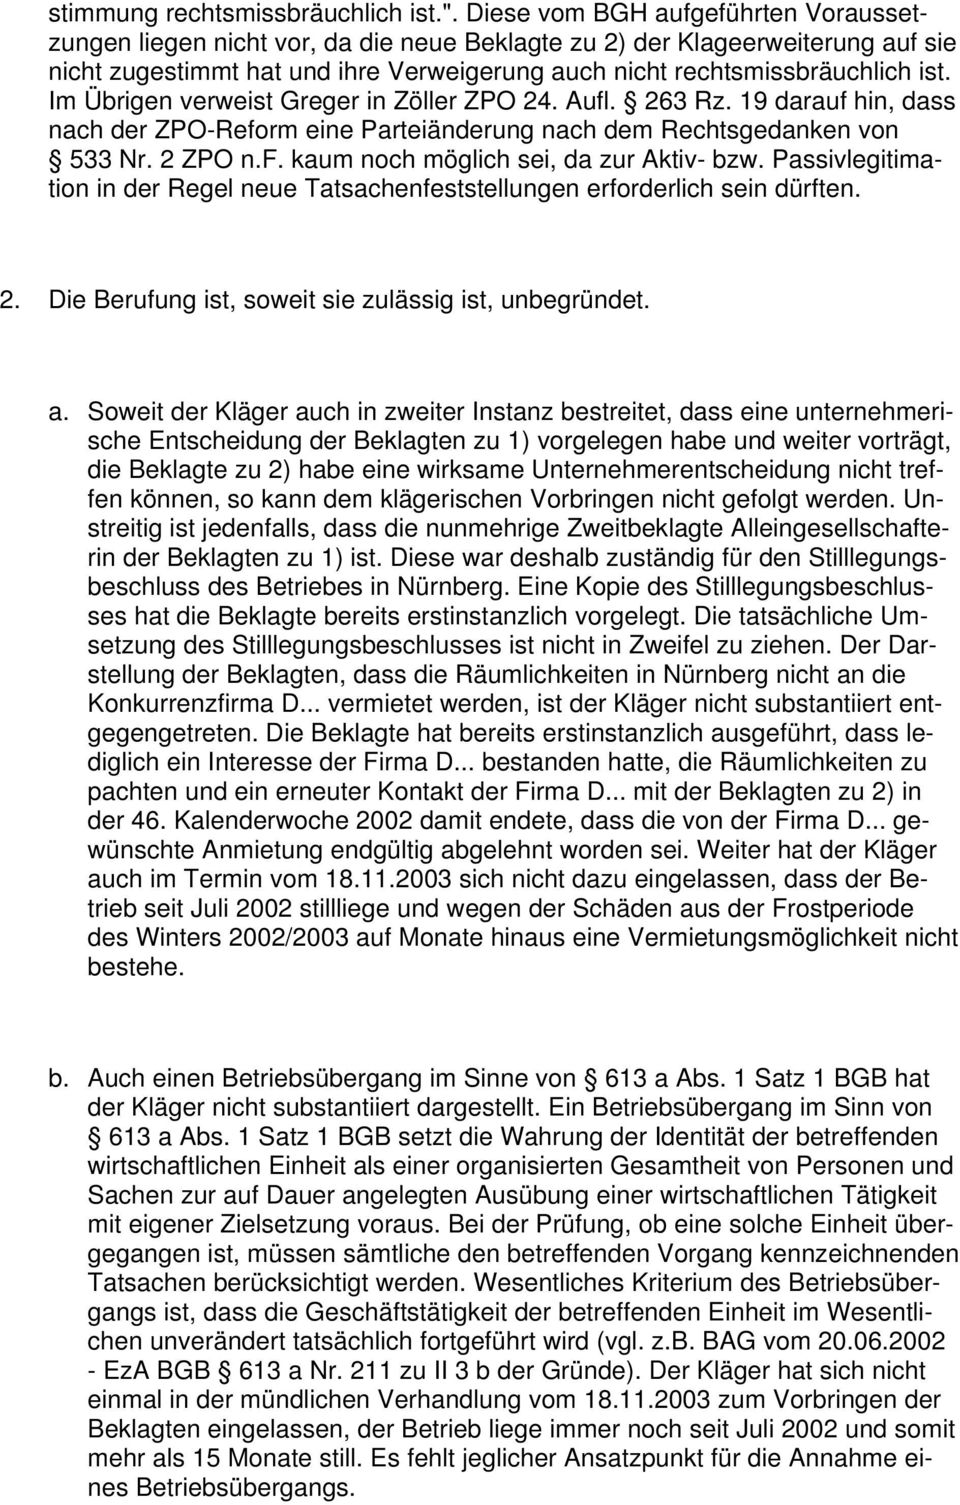 Im Übrigen verweist Greger in Zöller ZPO 24. Aufl. 263 Rz. 19 darauf hin, dass nach der ZPO-Reform eine Parteiänderung nach dem Rechtsgedanken von 533 Nr. 2 ZPO n.f. kaum noch möglich sei, da zur Aktiv- bzw.